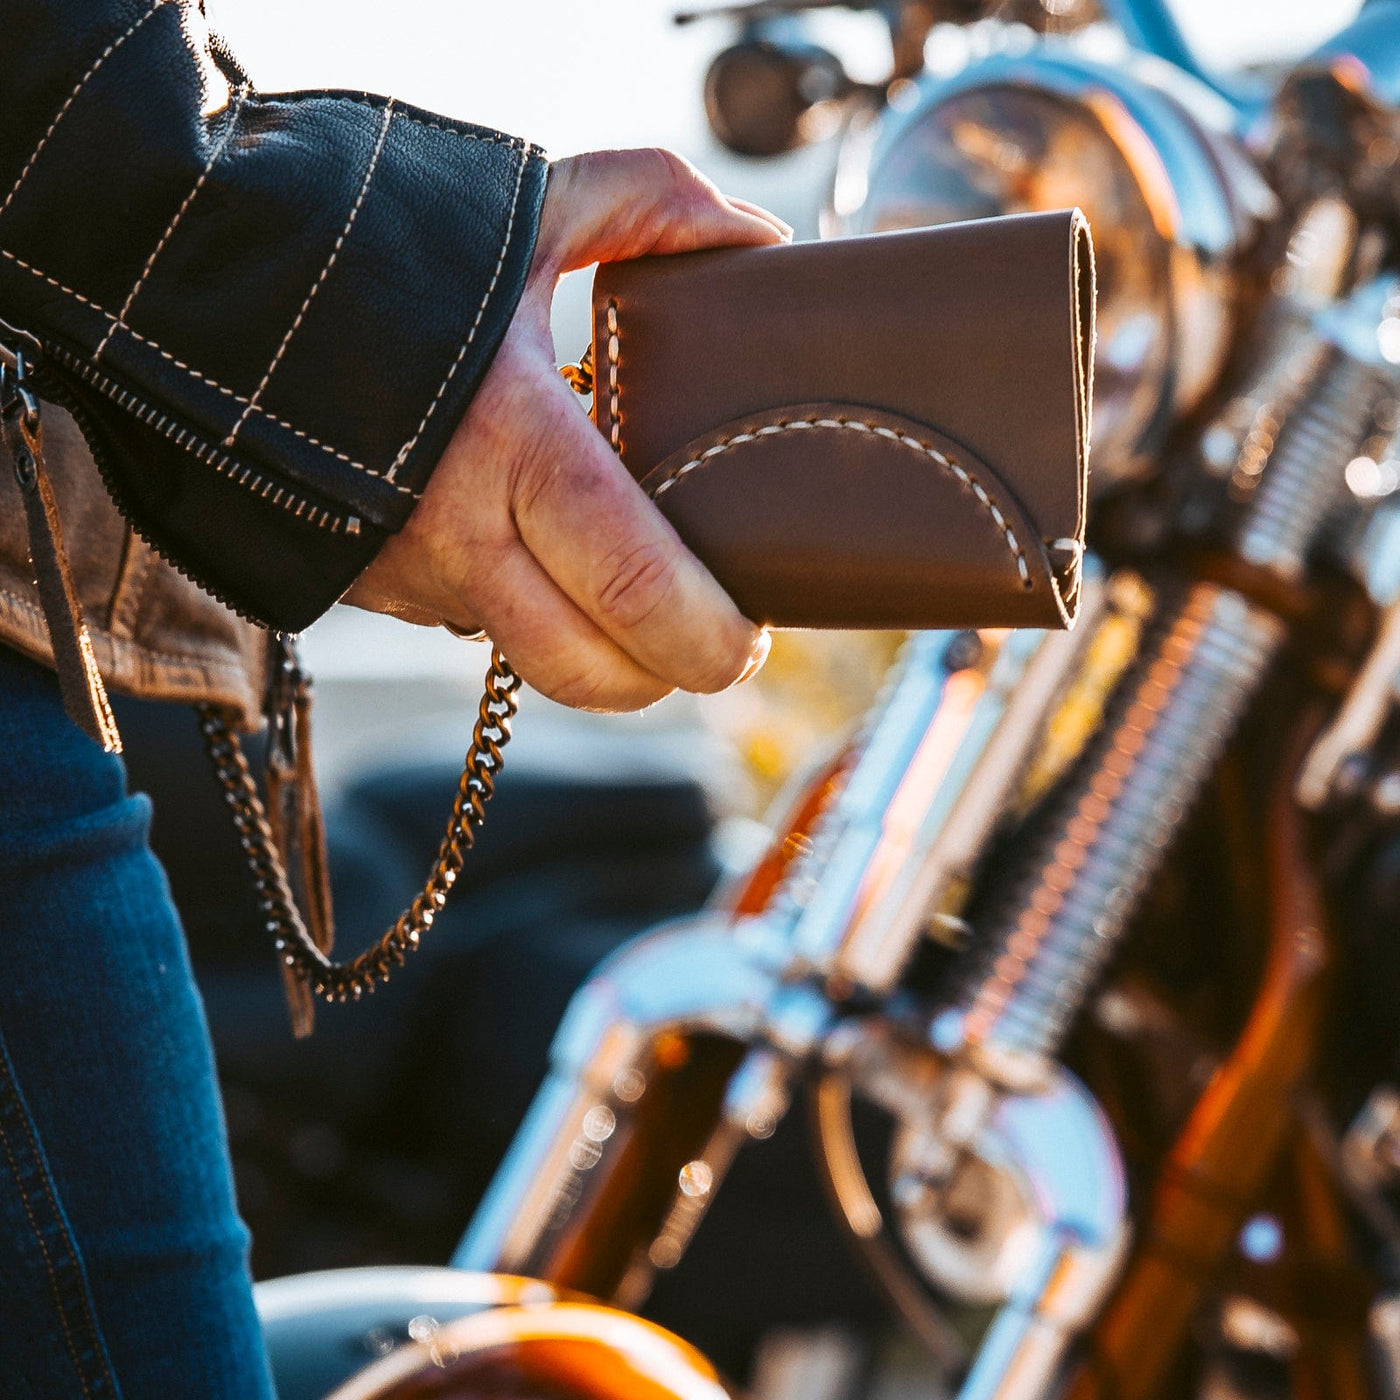 Leather Biker Wallet - Natural Popov Leather